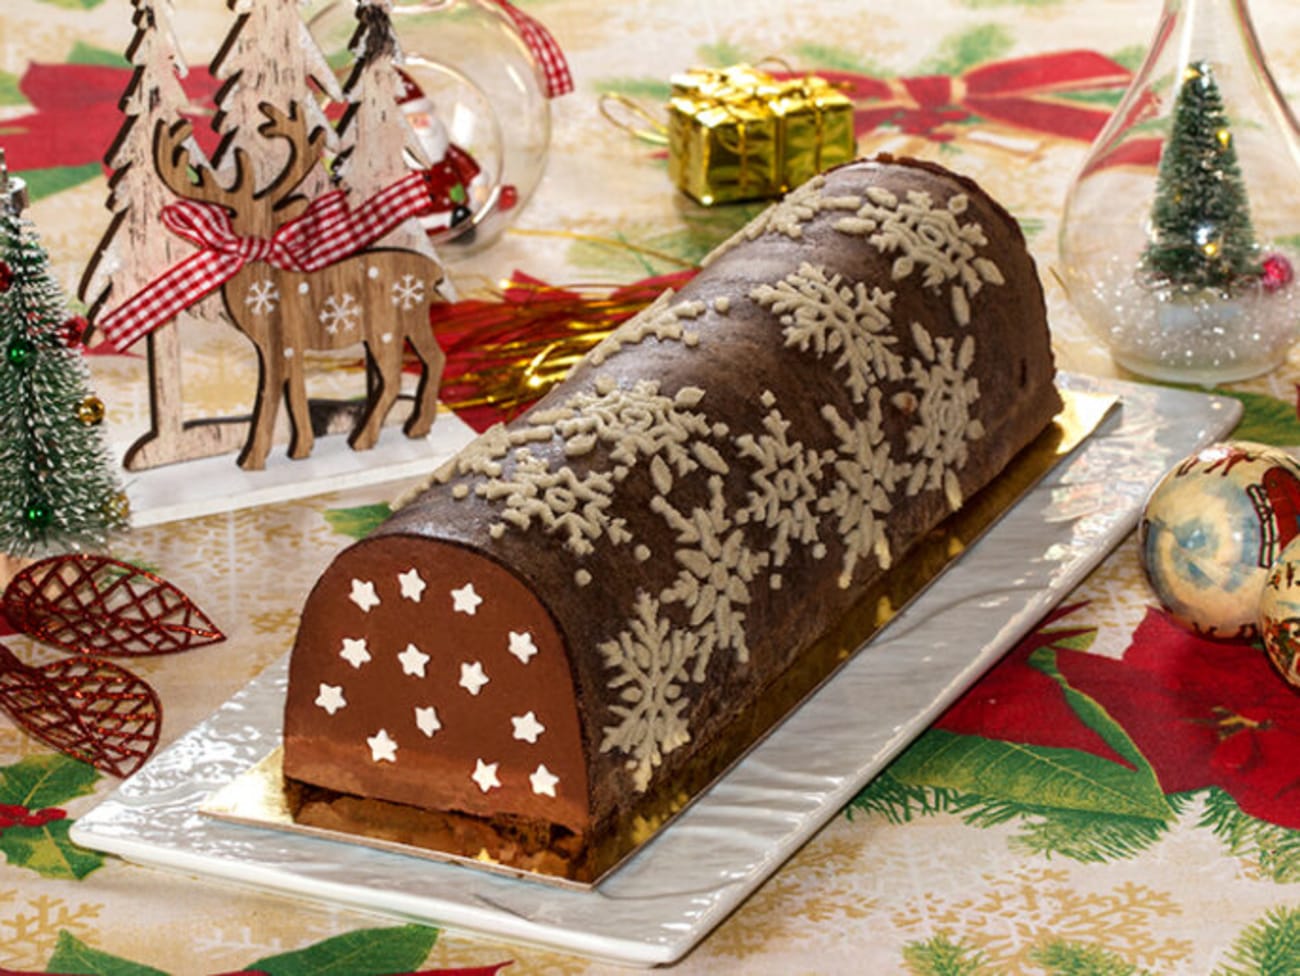 Chocolate Yule log (Bûche de Noël) - Les Chats Gourmets - Recettes